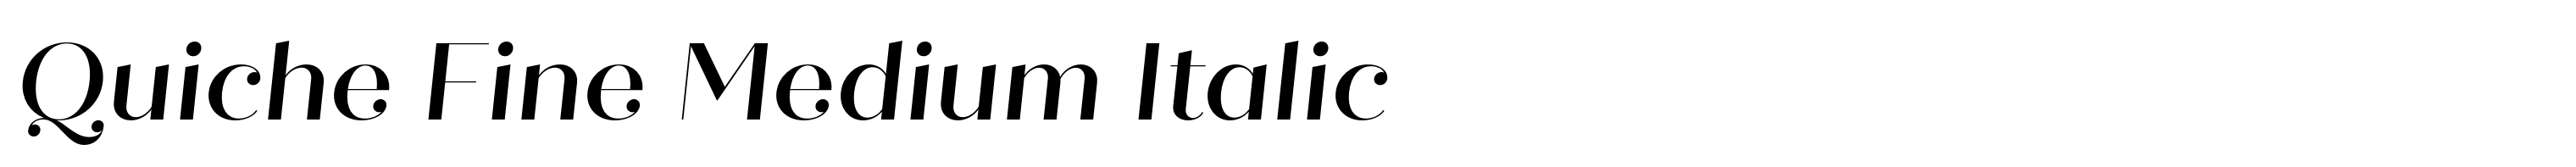 Quiche Fine Medium Italic